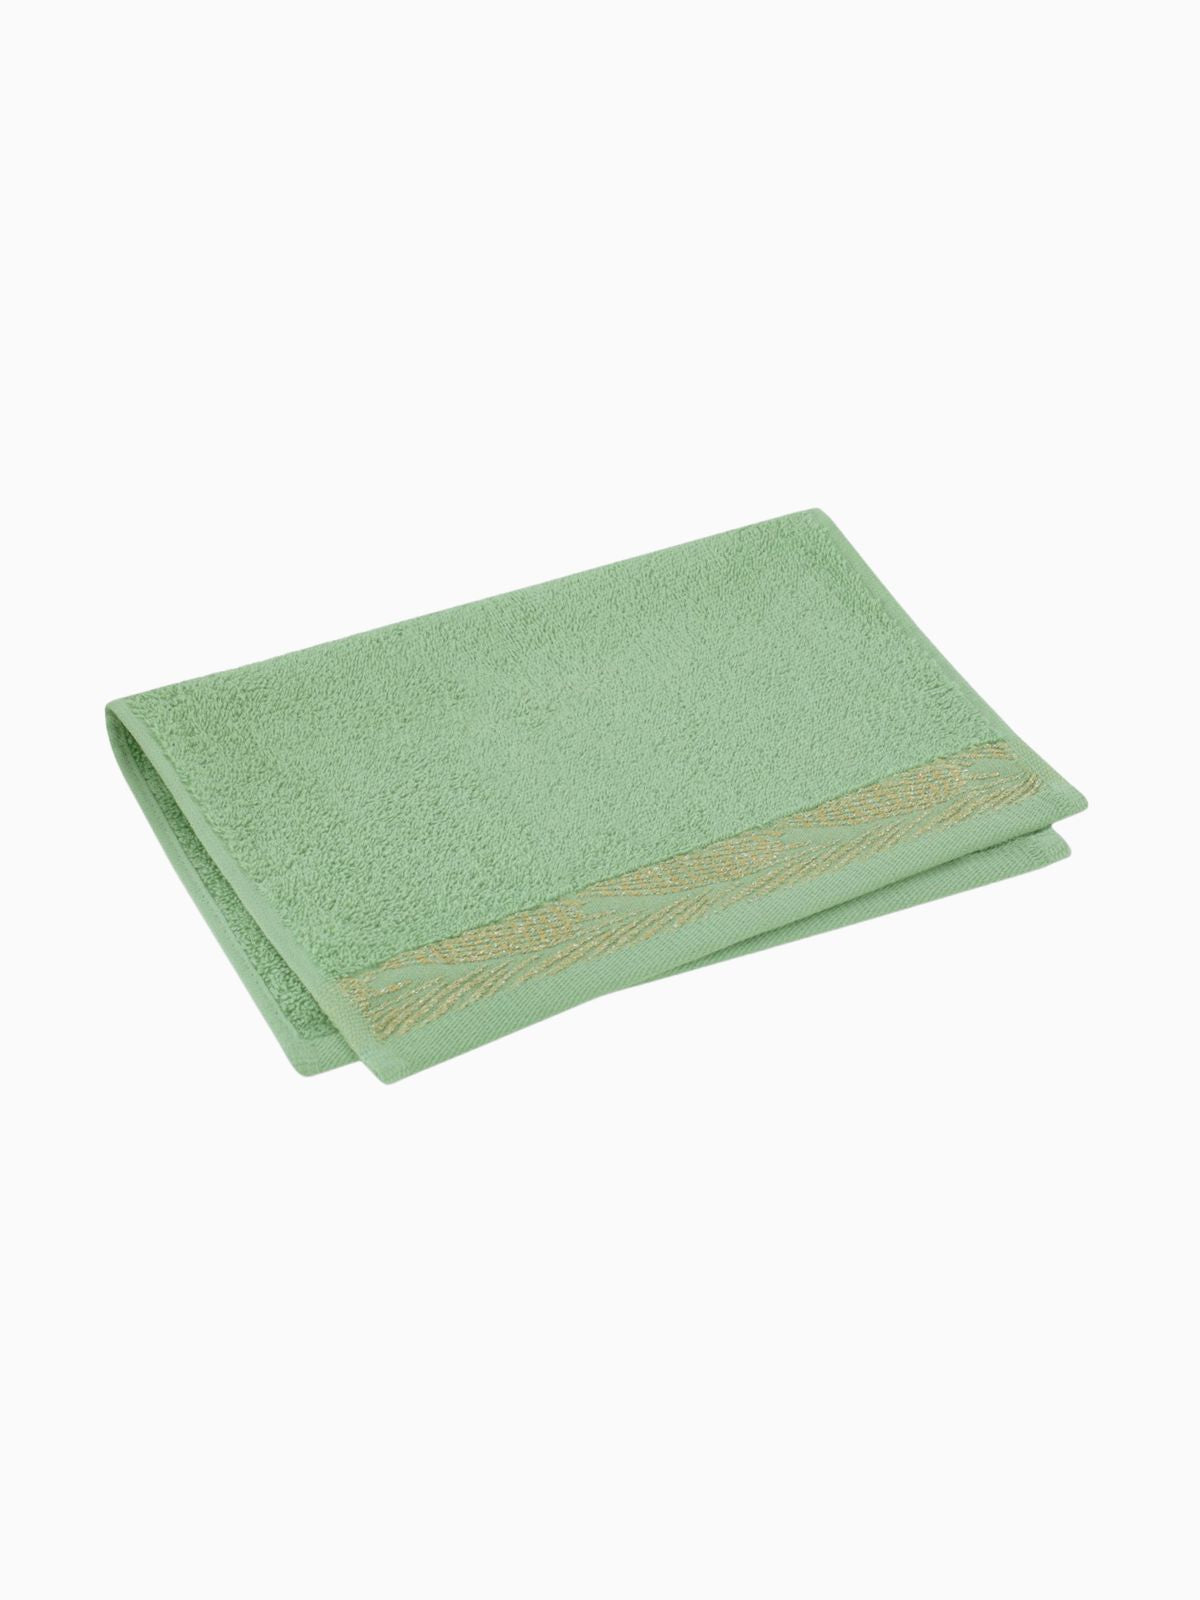 Asciugamano Allium in 100% cotone, colore verde 30x50 cm.-1